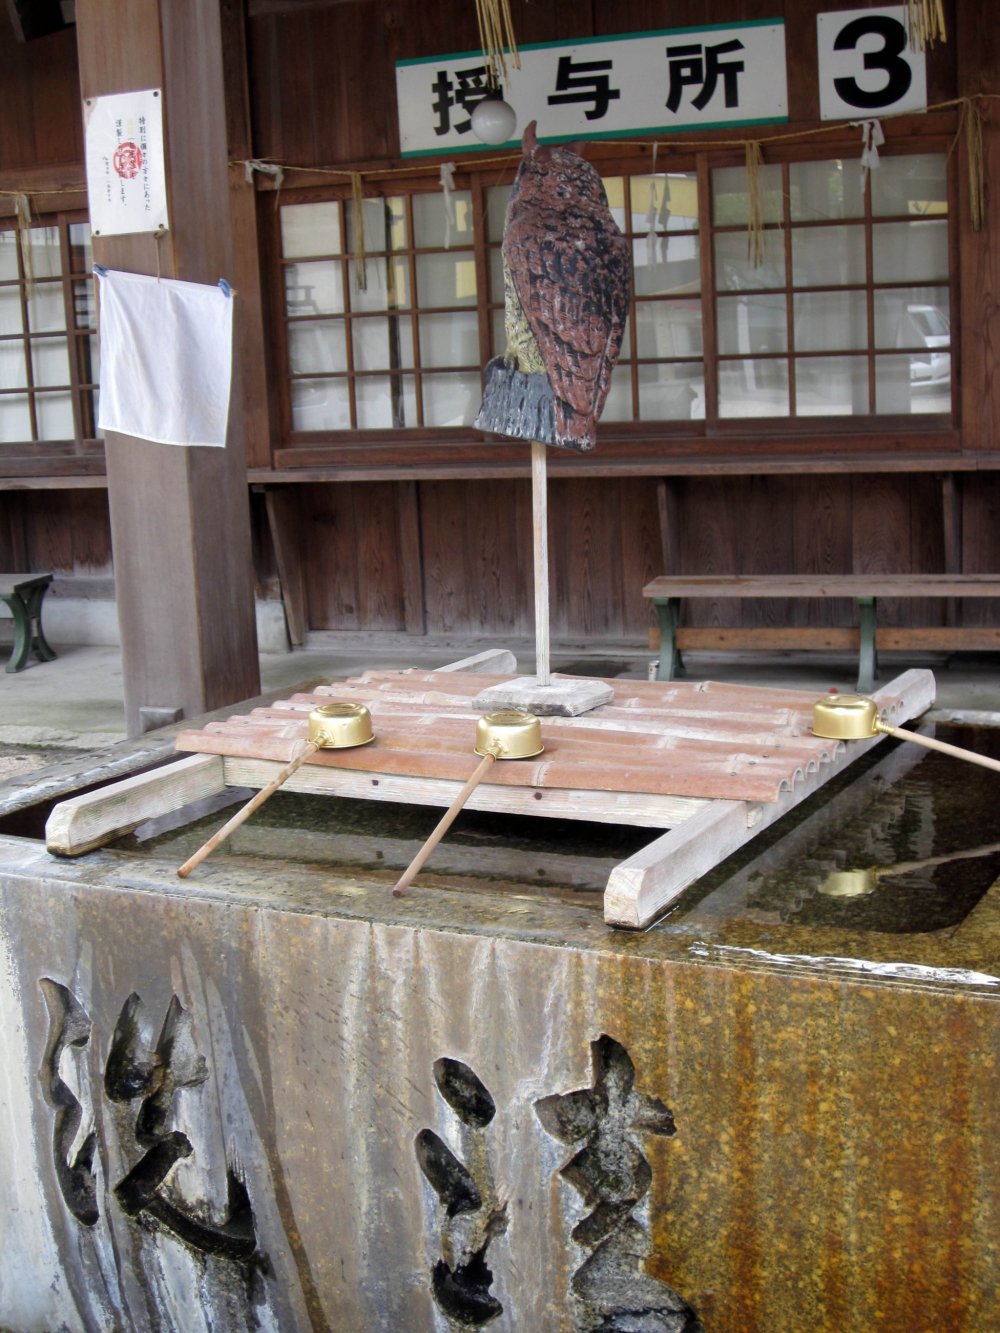 Hãy nhớ rửa tay của bạn trước khi vào khu vực đền thờ Tsukimi Tei.